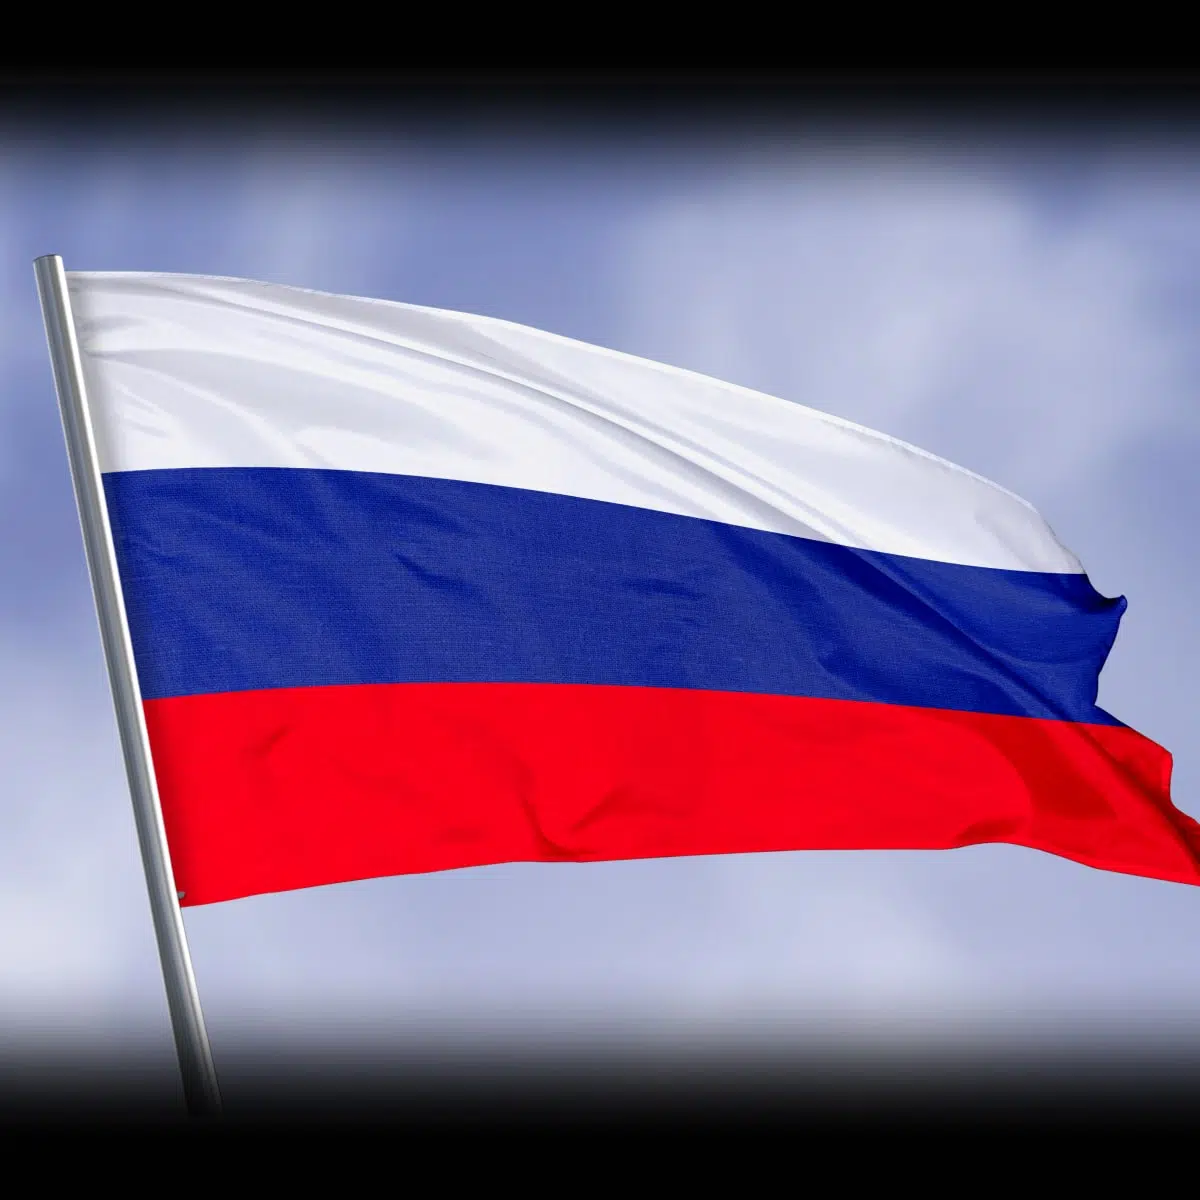 Island zatvorio ambasadu u Moskvi, Rusija obećala odgovor